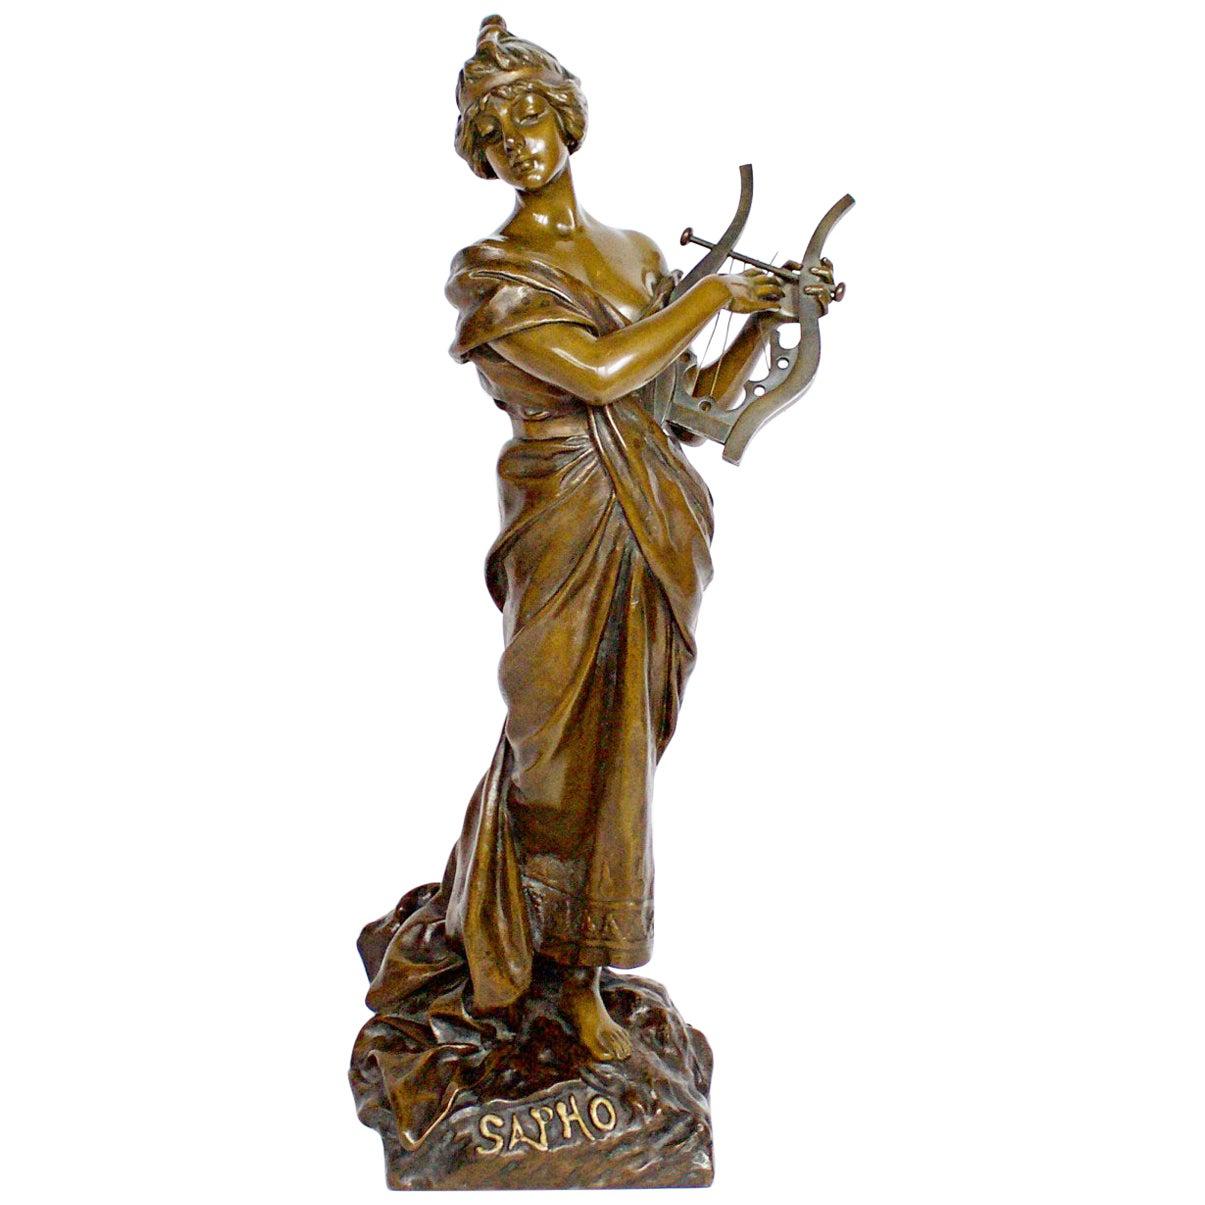 'Sapho' a Large Art Nouveau Bronze Sculpture by Emmanuel Villanis, circa 1890